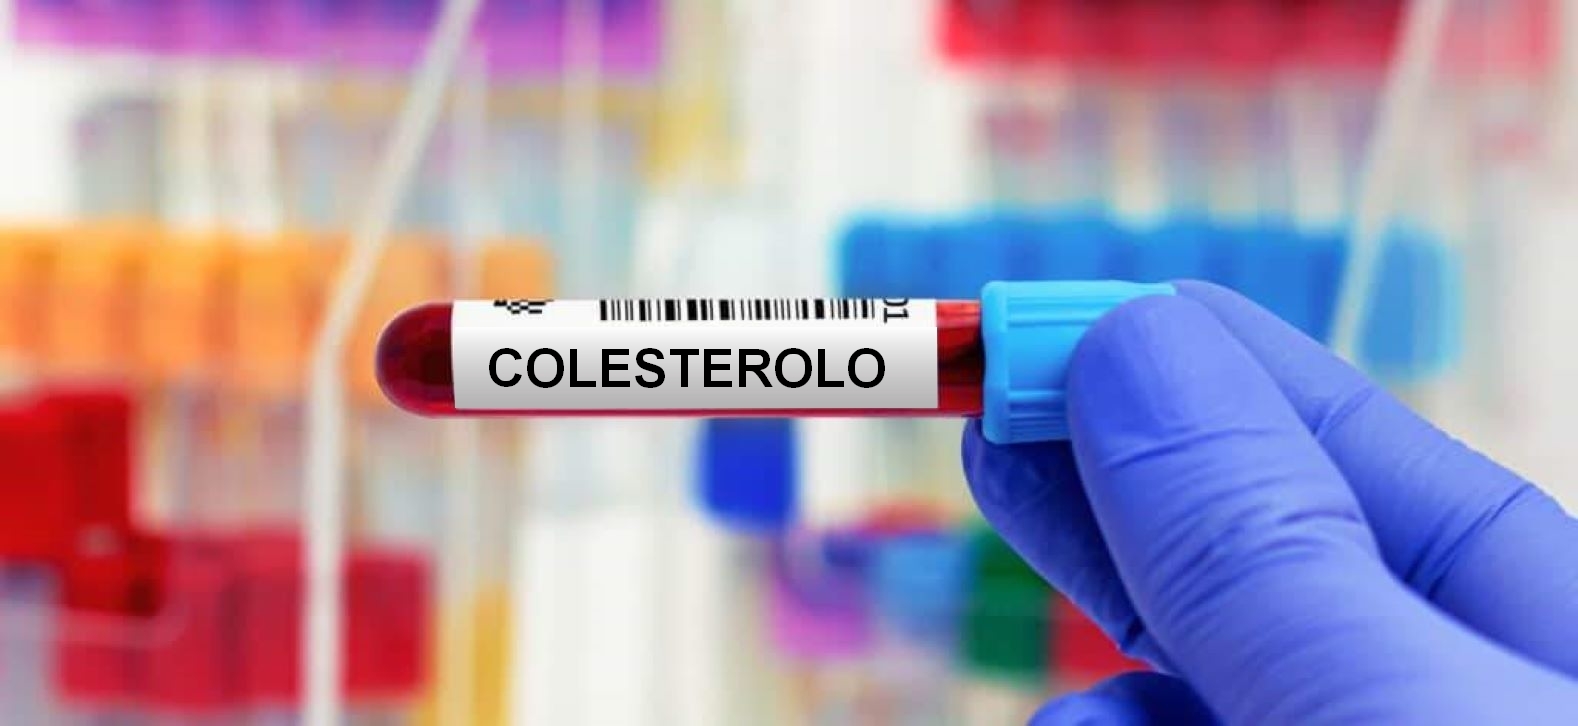 Quando è il caso di prendere la pillola del colesterolo?